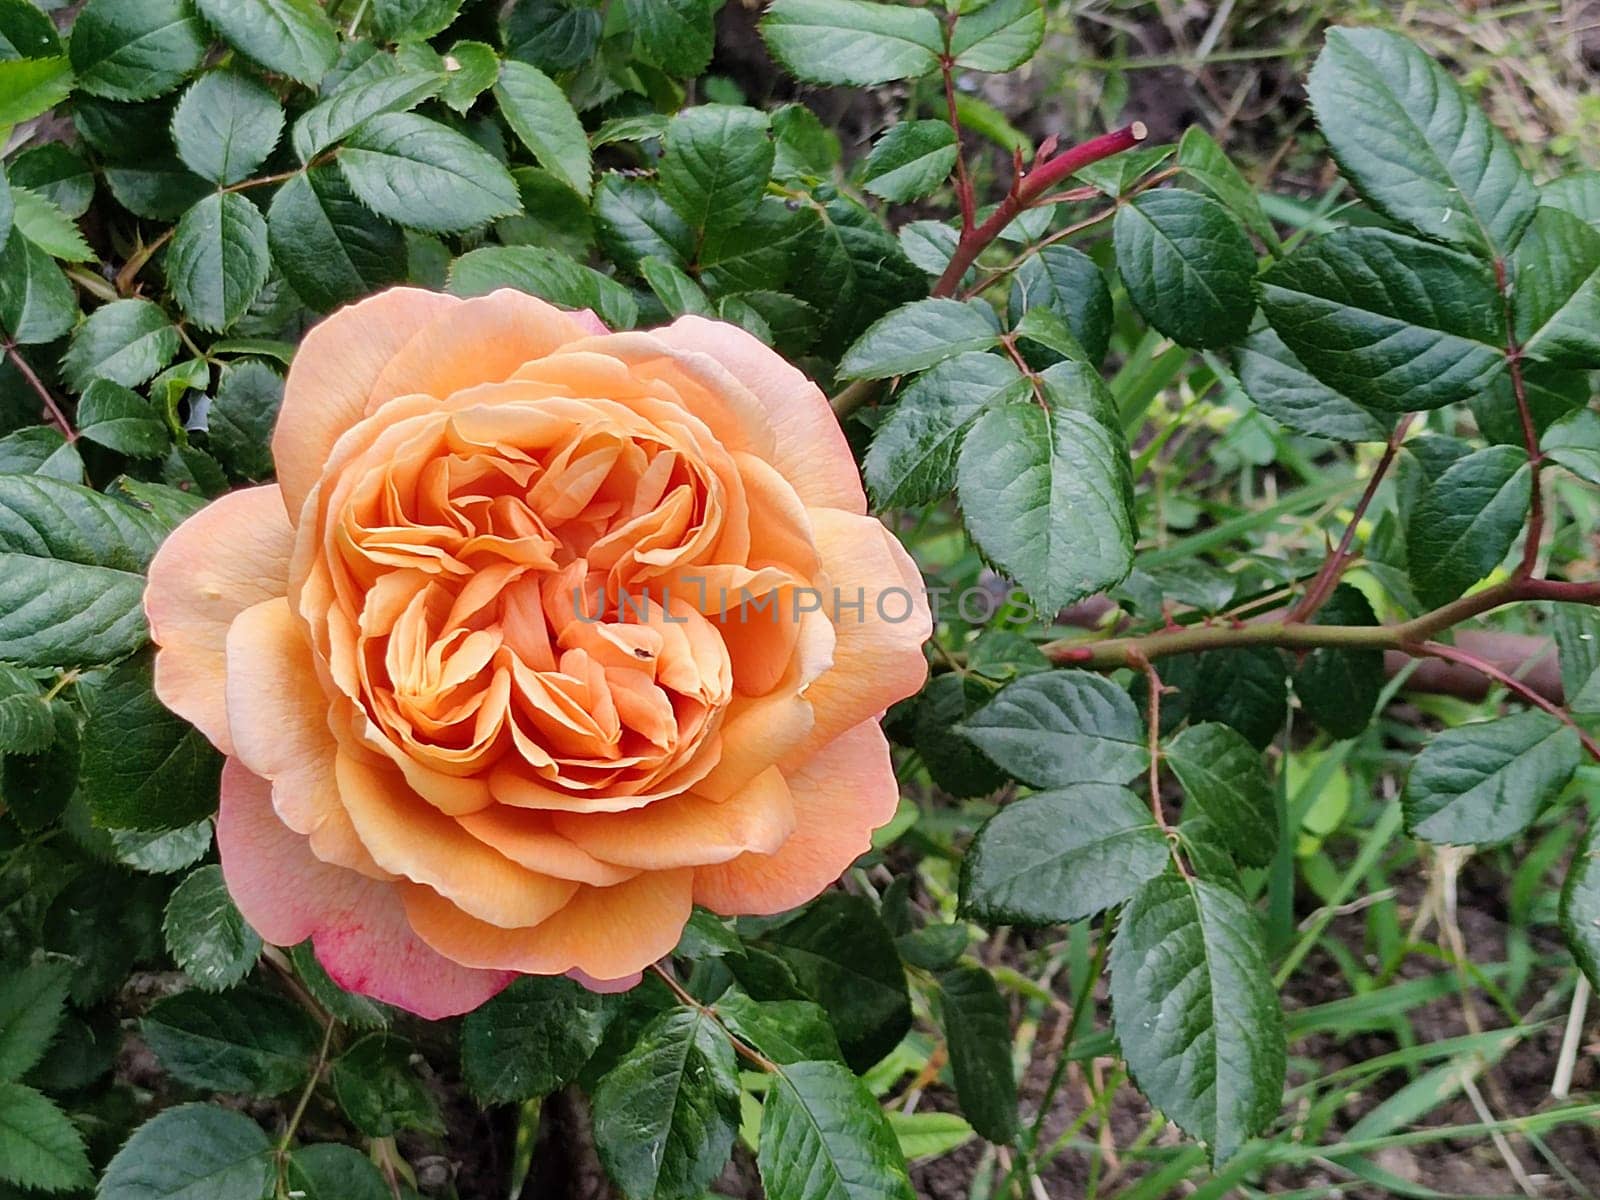 delicate blooming tea rose in the garden.